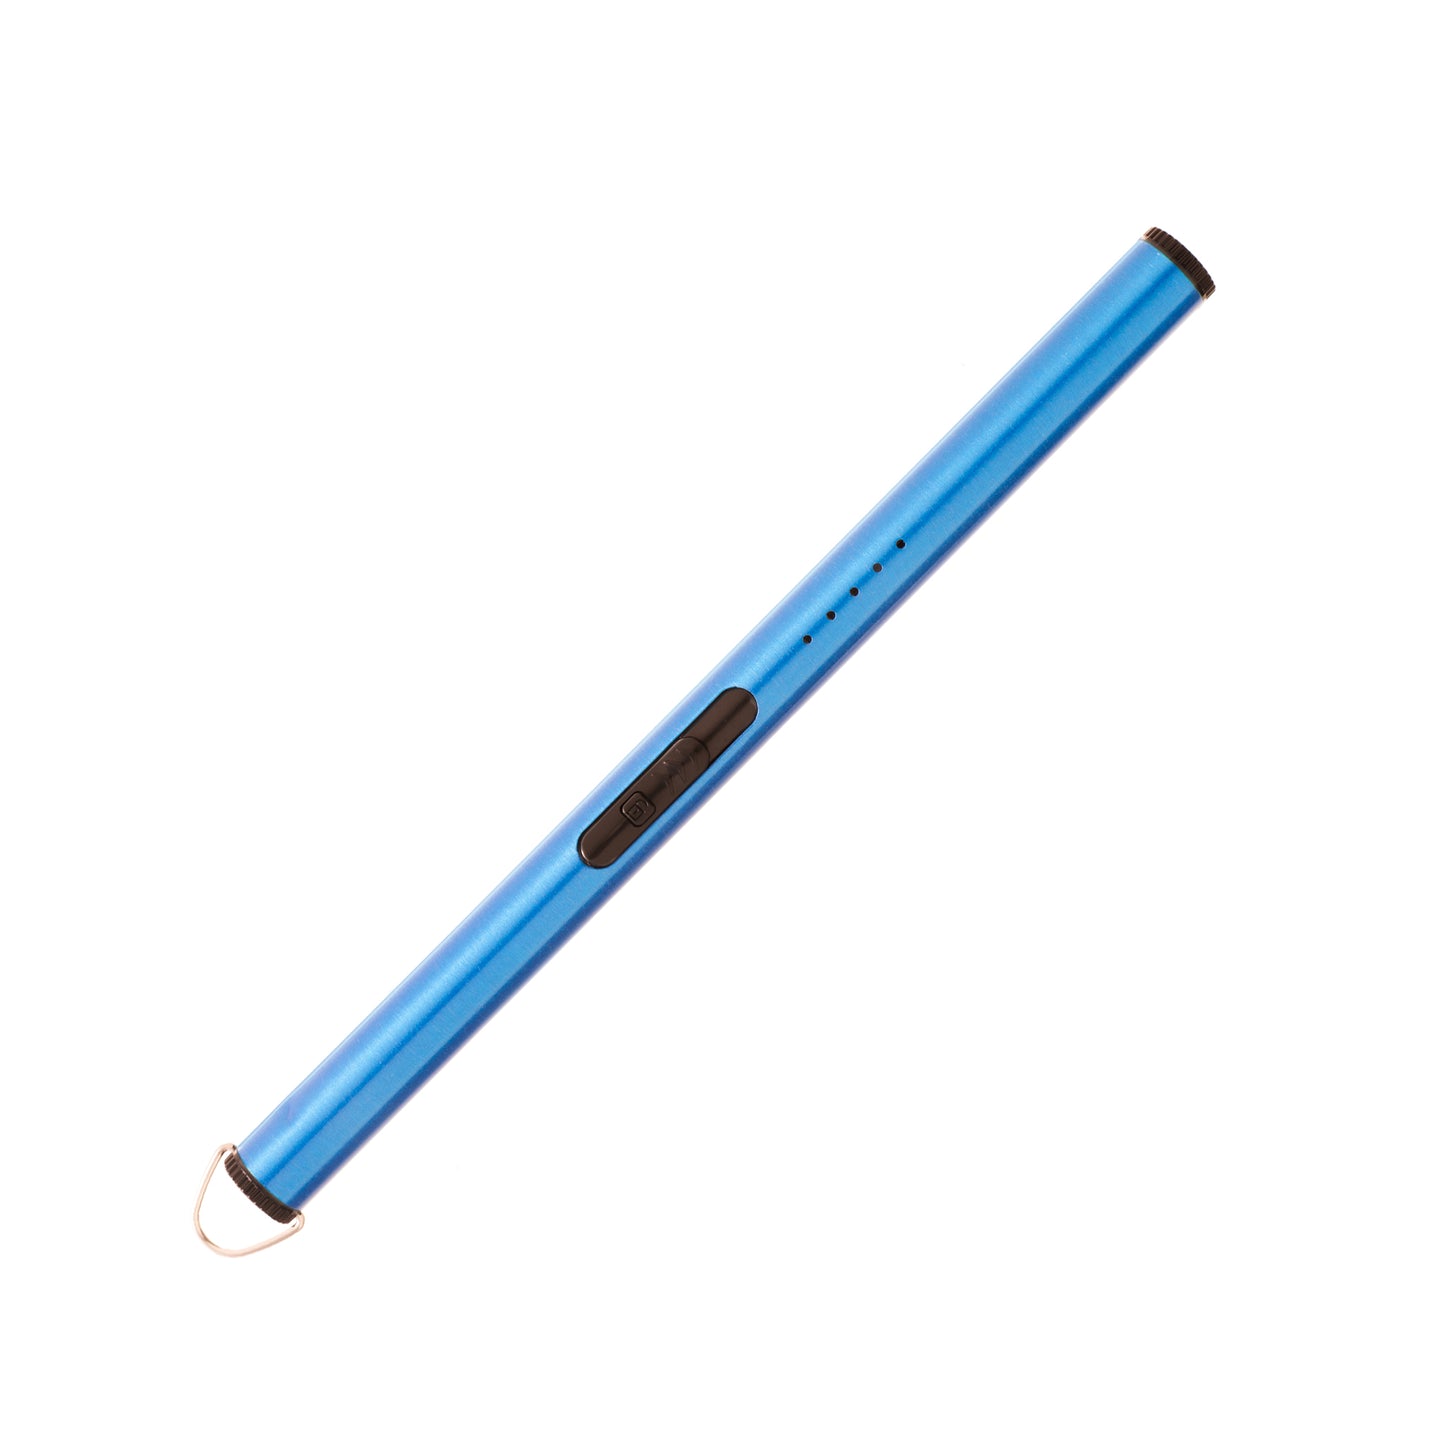 Flameless Cylinder Lighter Blue 8.75"